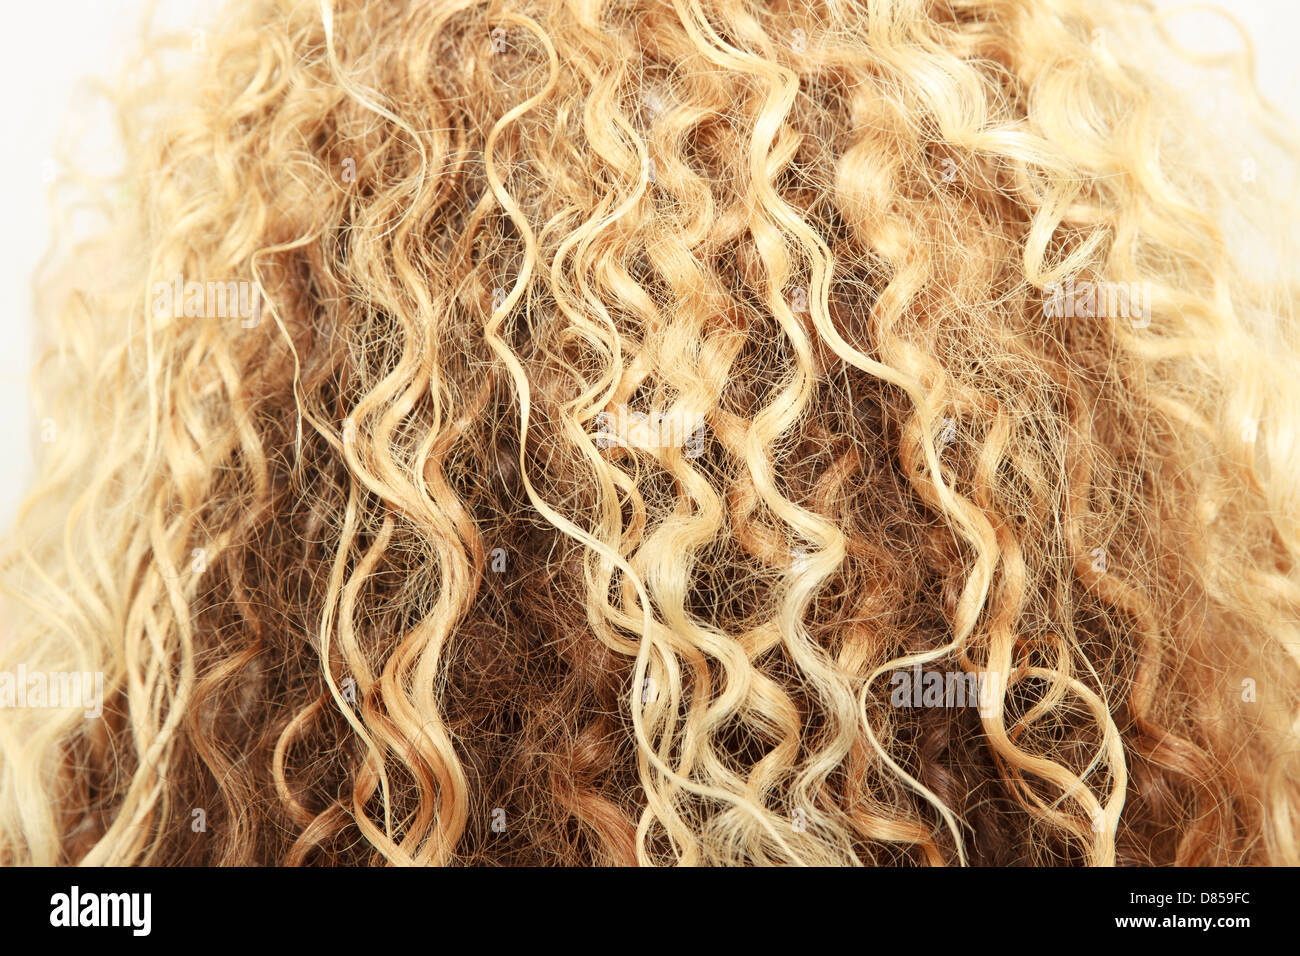 Les cheveux bouclés crépus secs Photo Stock - Alamy